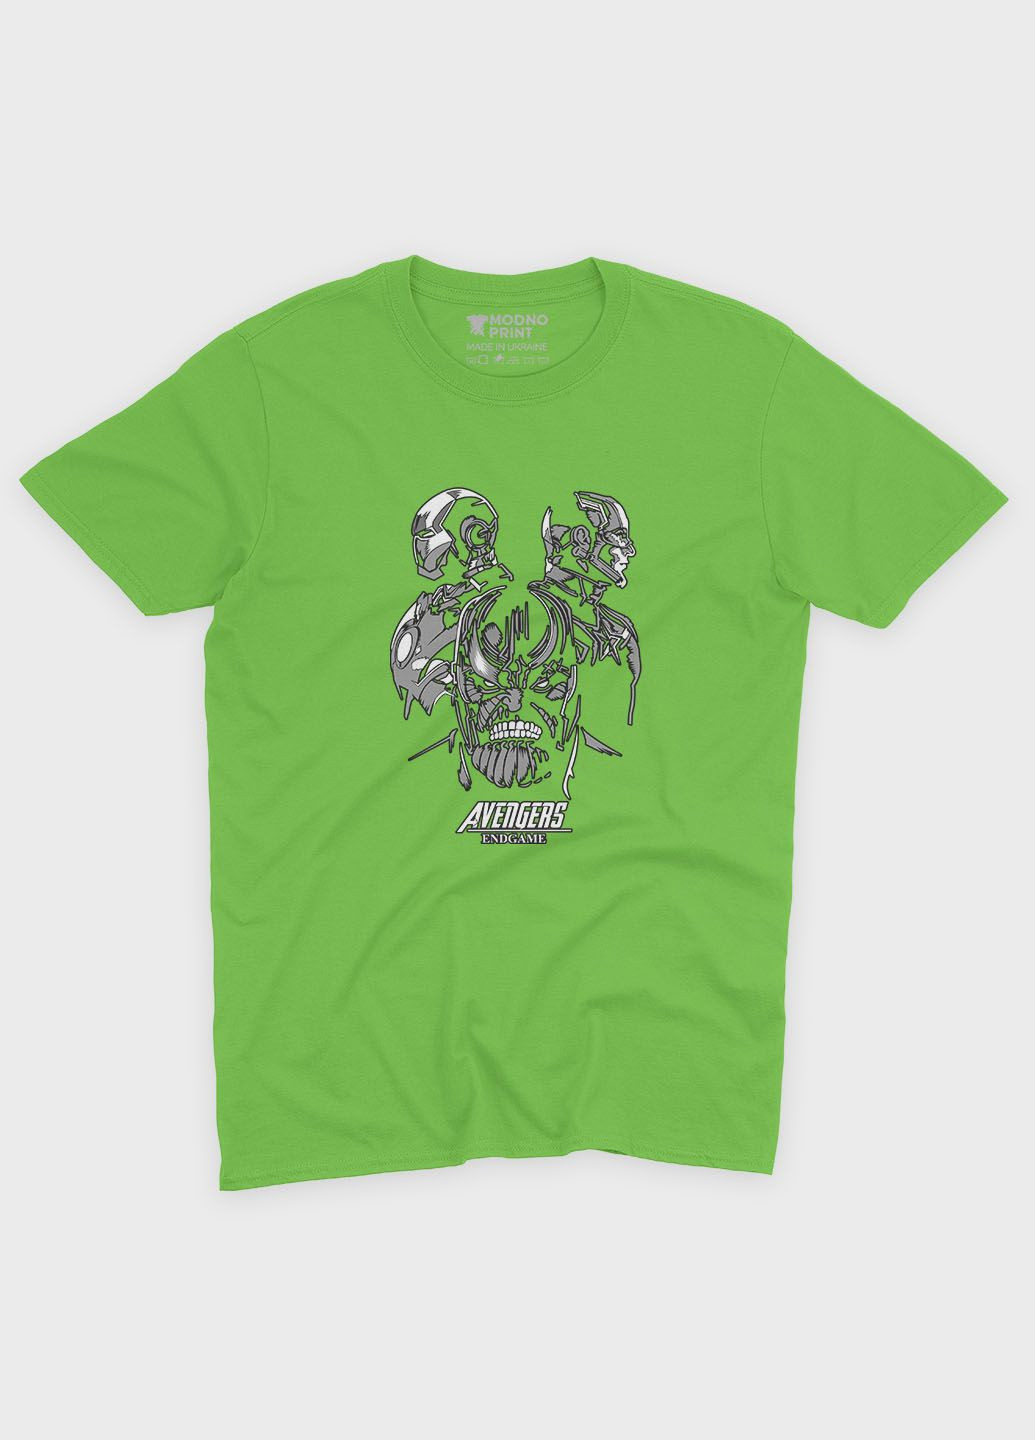 Салатовая демисезонная футболка для мальчика с принтом супезлодея - танос (ts001-1-kiw-006-019-013-b) Modno